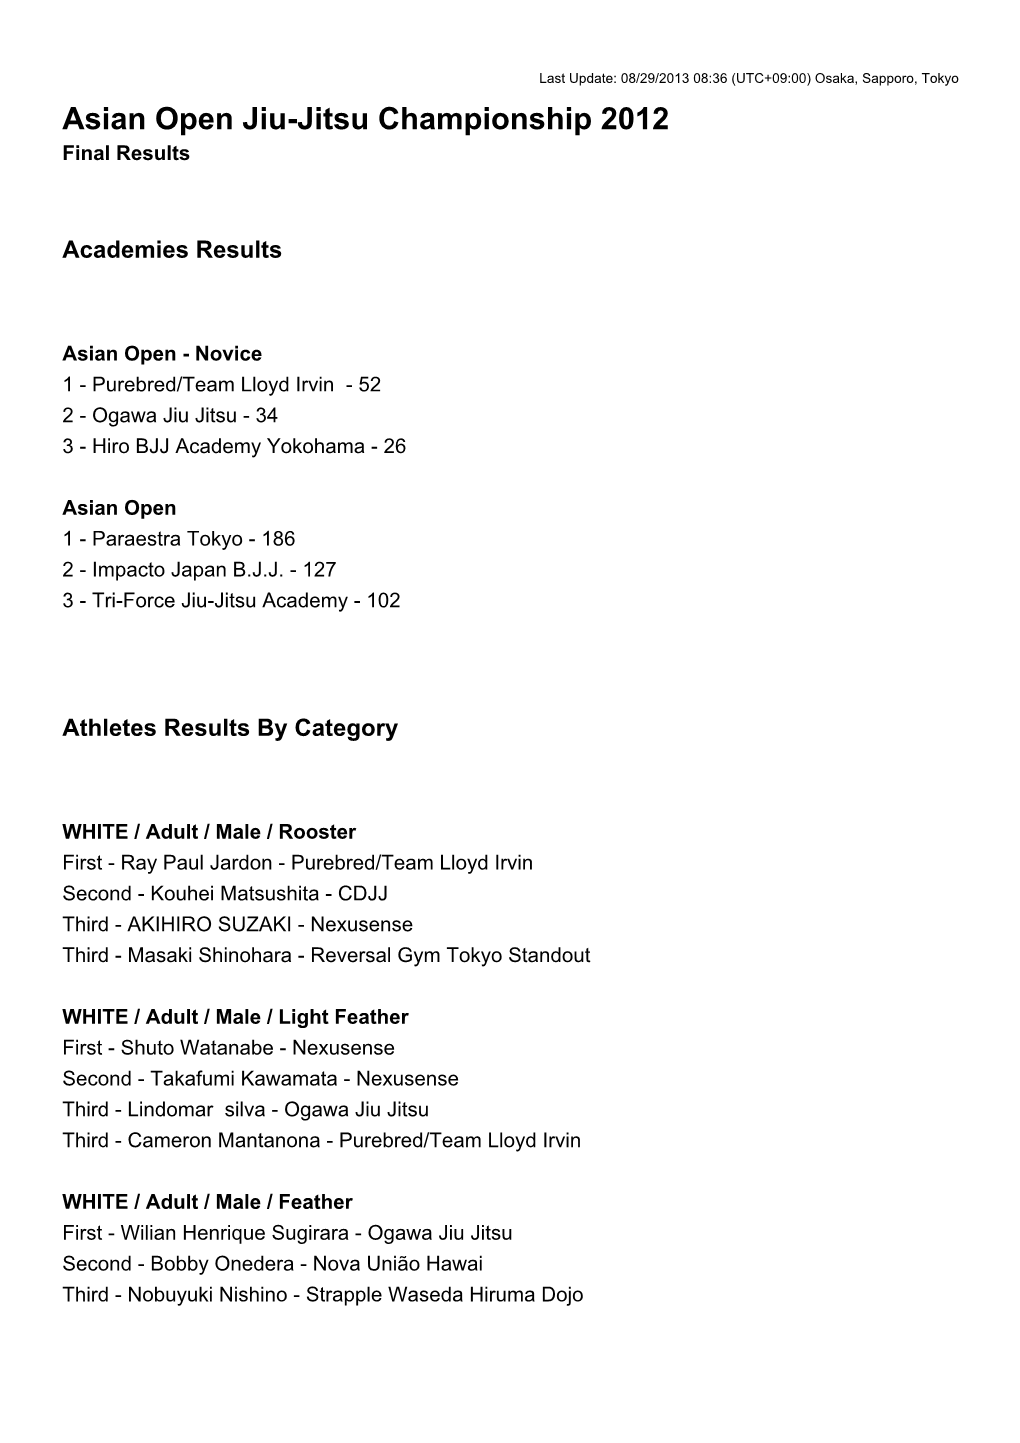 Asian Open Jiu-Jitsu Championship 2012 Final Results